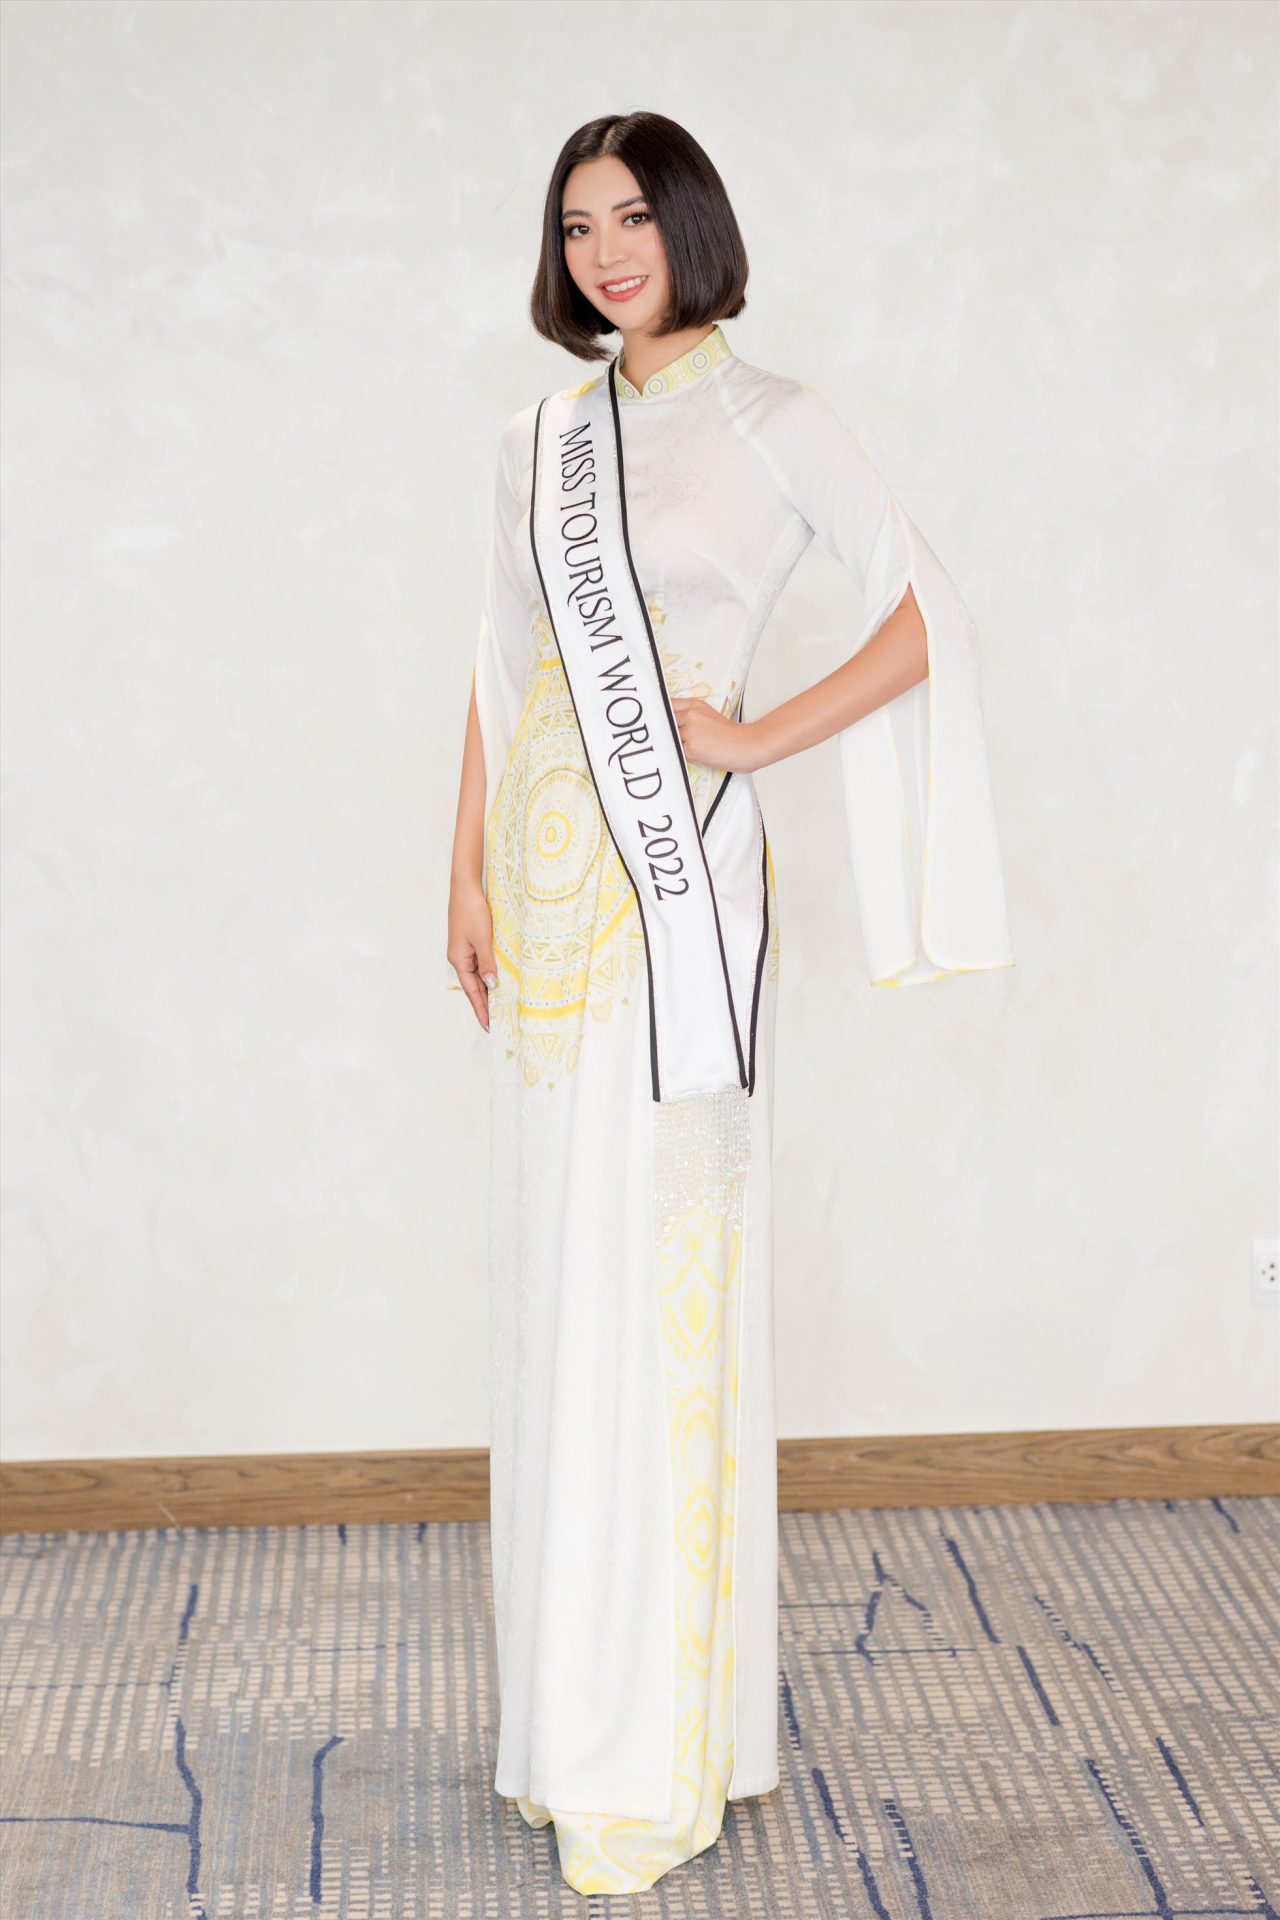 Hoa hậu Erina Hanawa người Nhật Bản tạo dáng với trang phục cách điệu xẻ ở hai tay áo, họa tiết đậm phong cách Việt.  Erina Hanawa sinh năm 1994, cao 1,72 m, số đo 3 vòng là 97-68-98 cm. Cô từng đoạt Á hậu 1 cuộc thi Hoa hậu Trái đất Nhật Bản 2020.